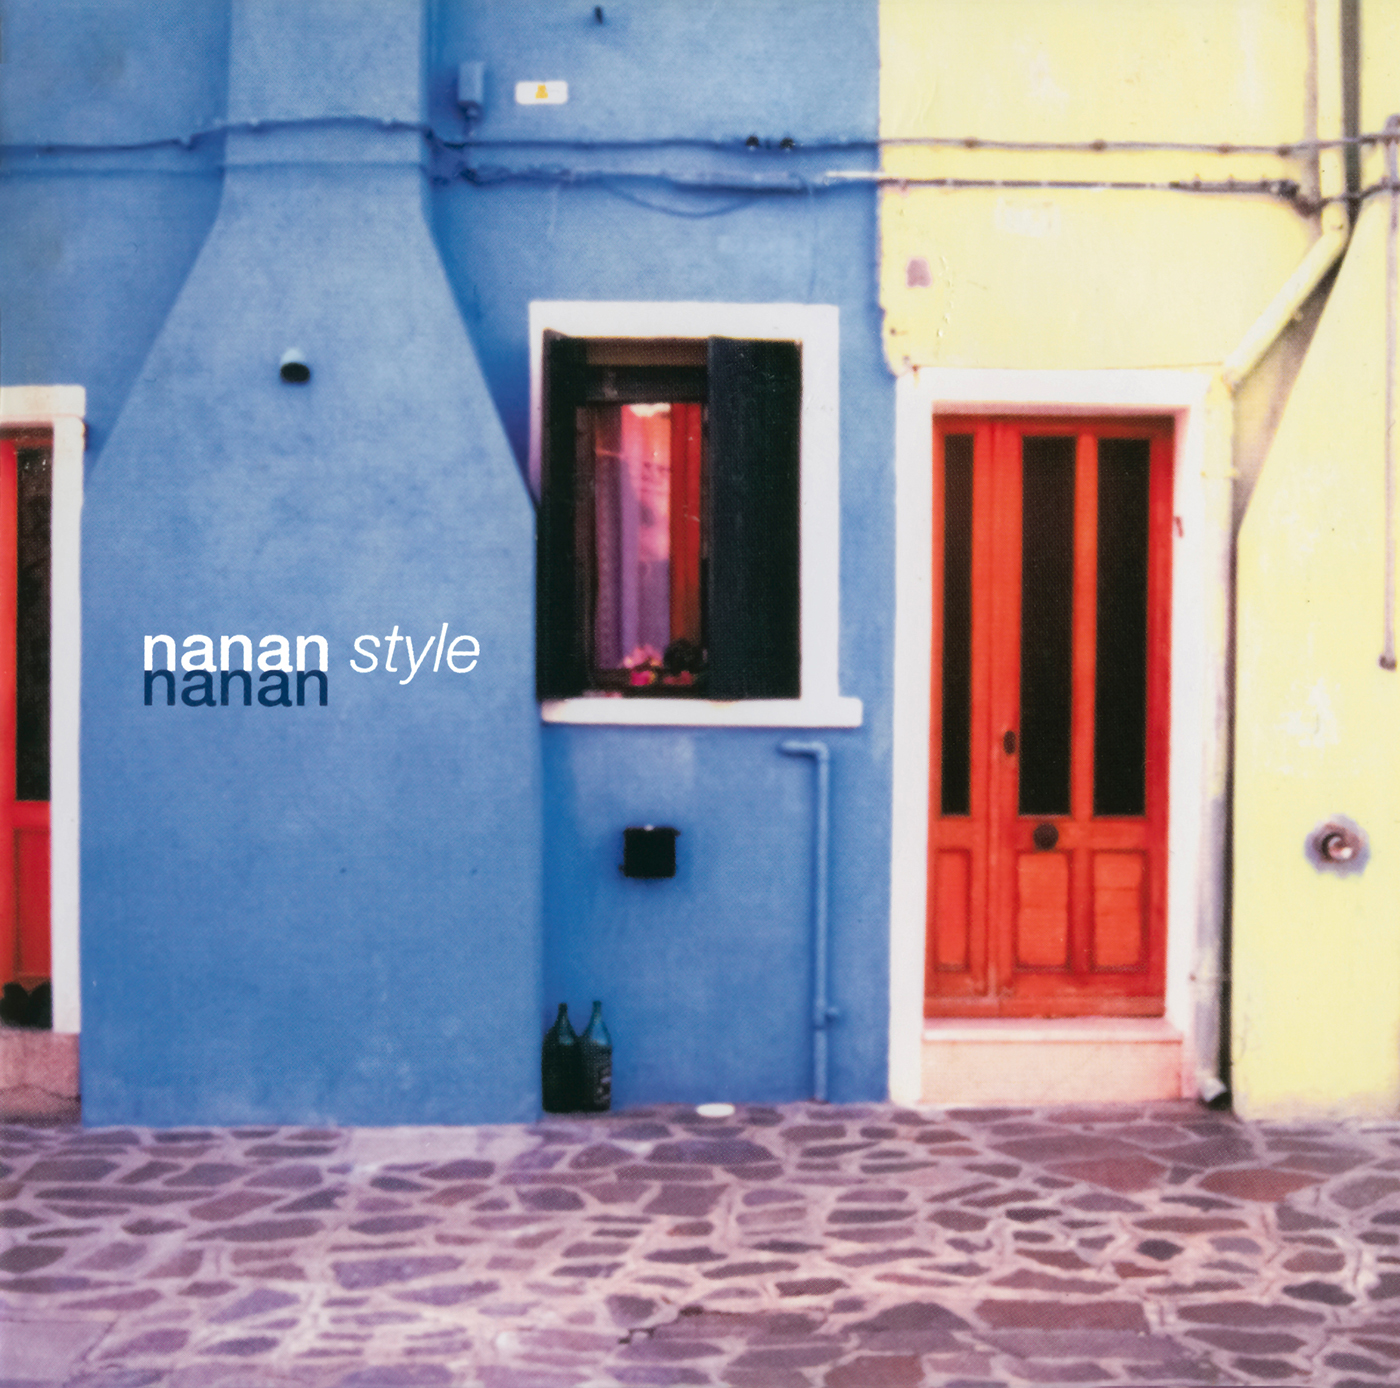 nanan style